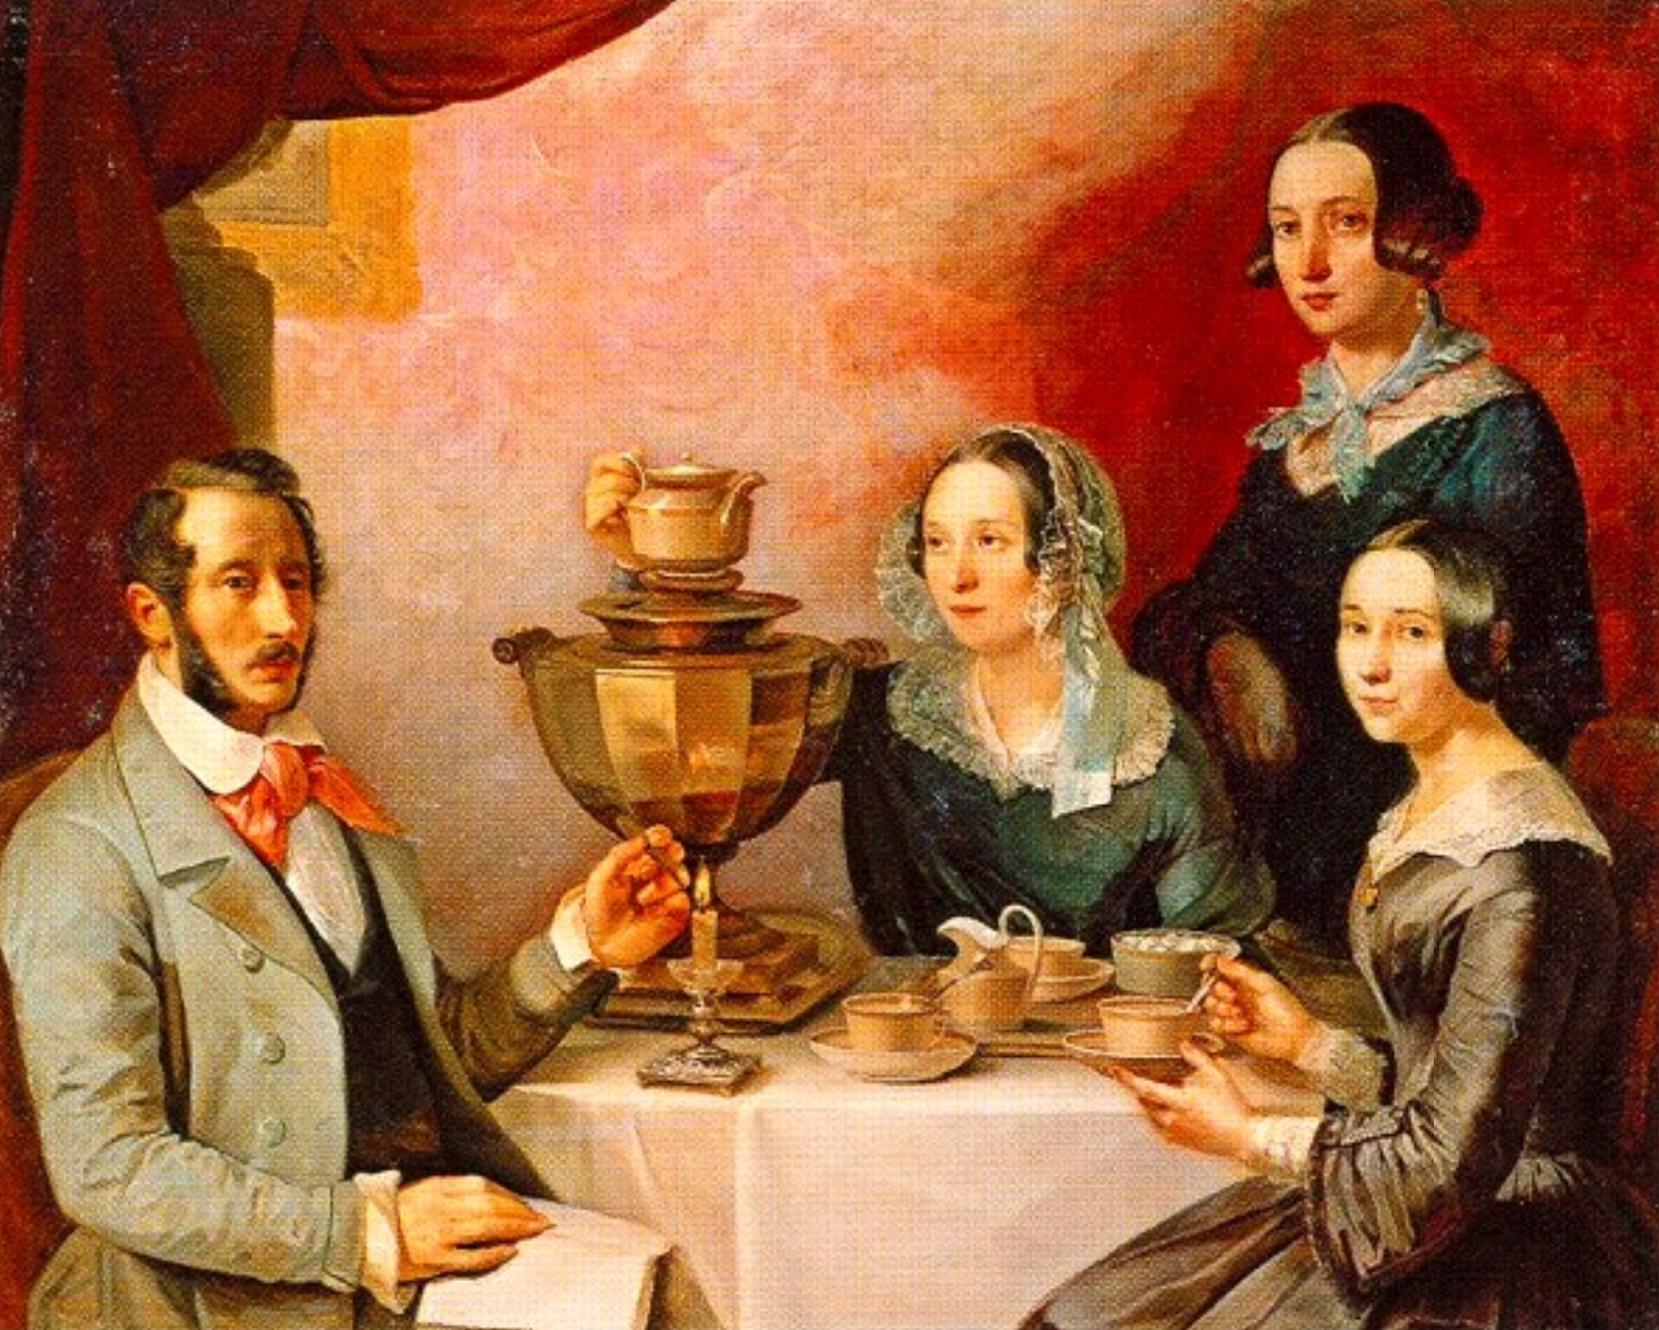 Чаепитие в семье. Мягков семейный портрет. Завтрак купчихи 19 века.